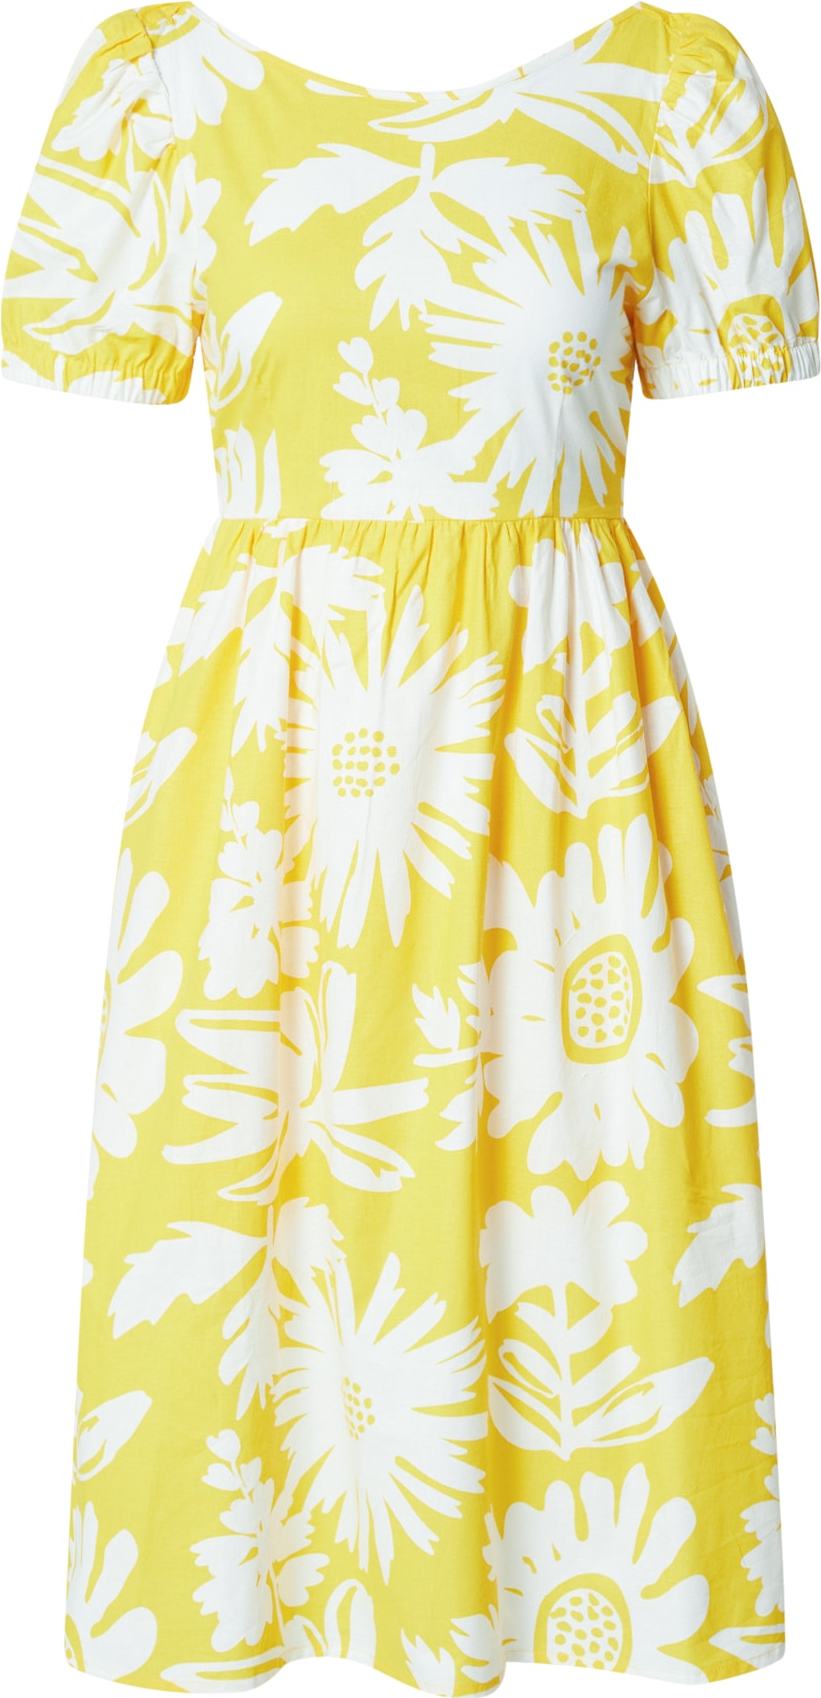 Compania Fantastica Šaty 'Vestido' žlutá / bílá